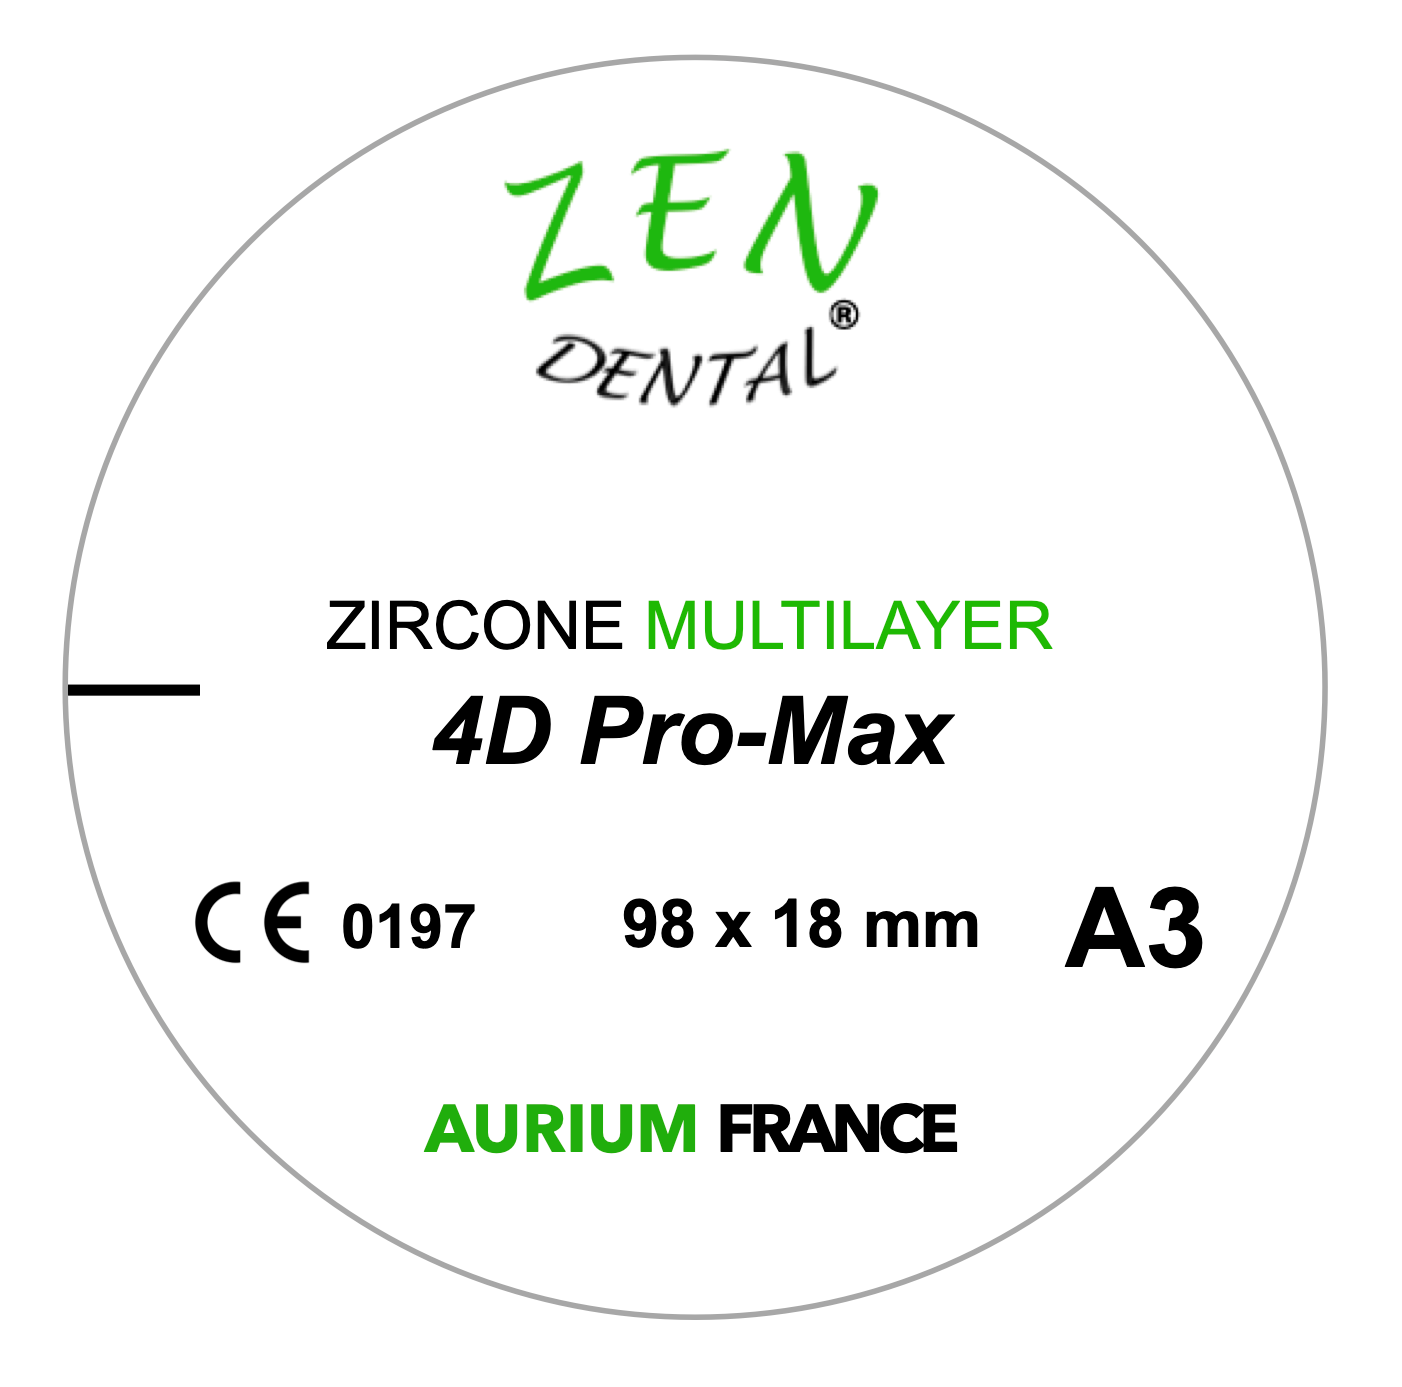 Zircone Multilayer 4D Pro-Max ZEN DENTAL